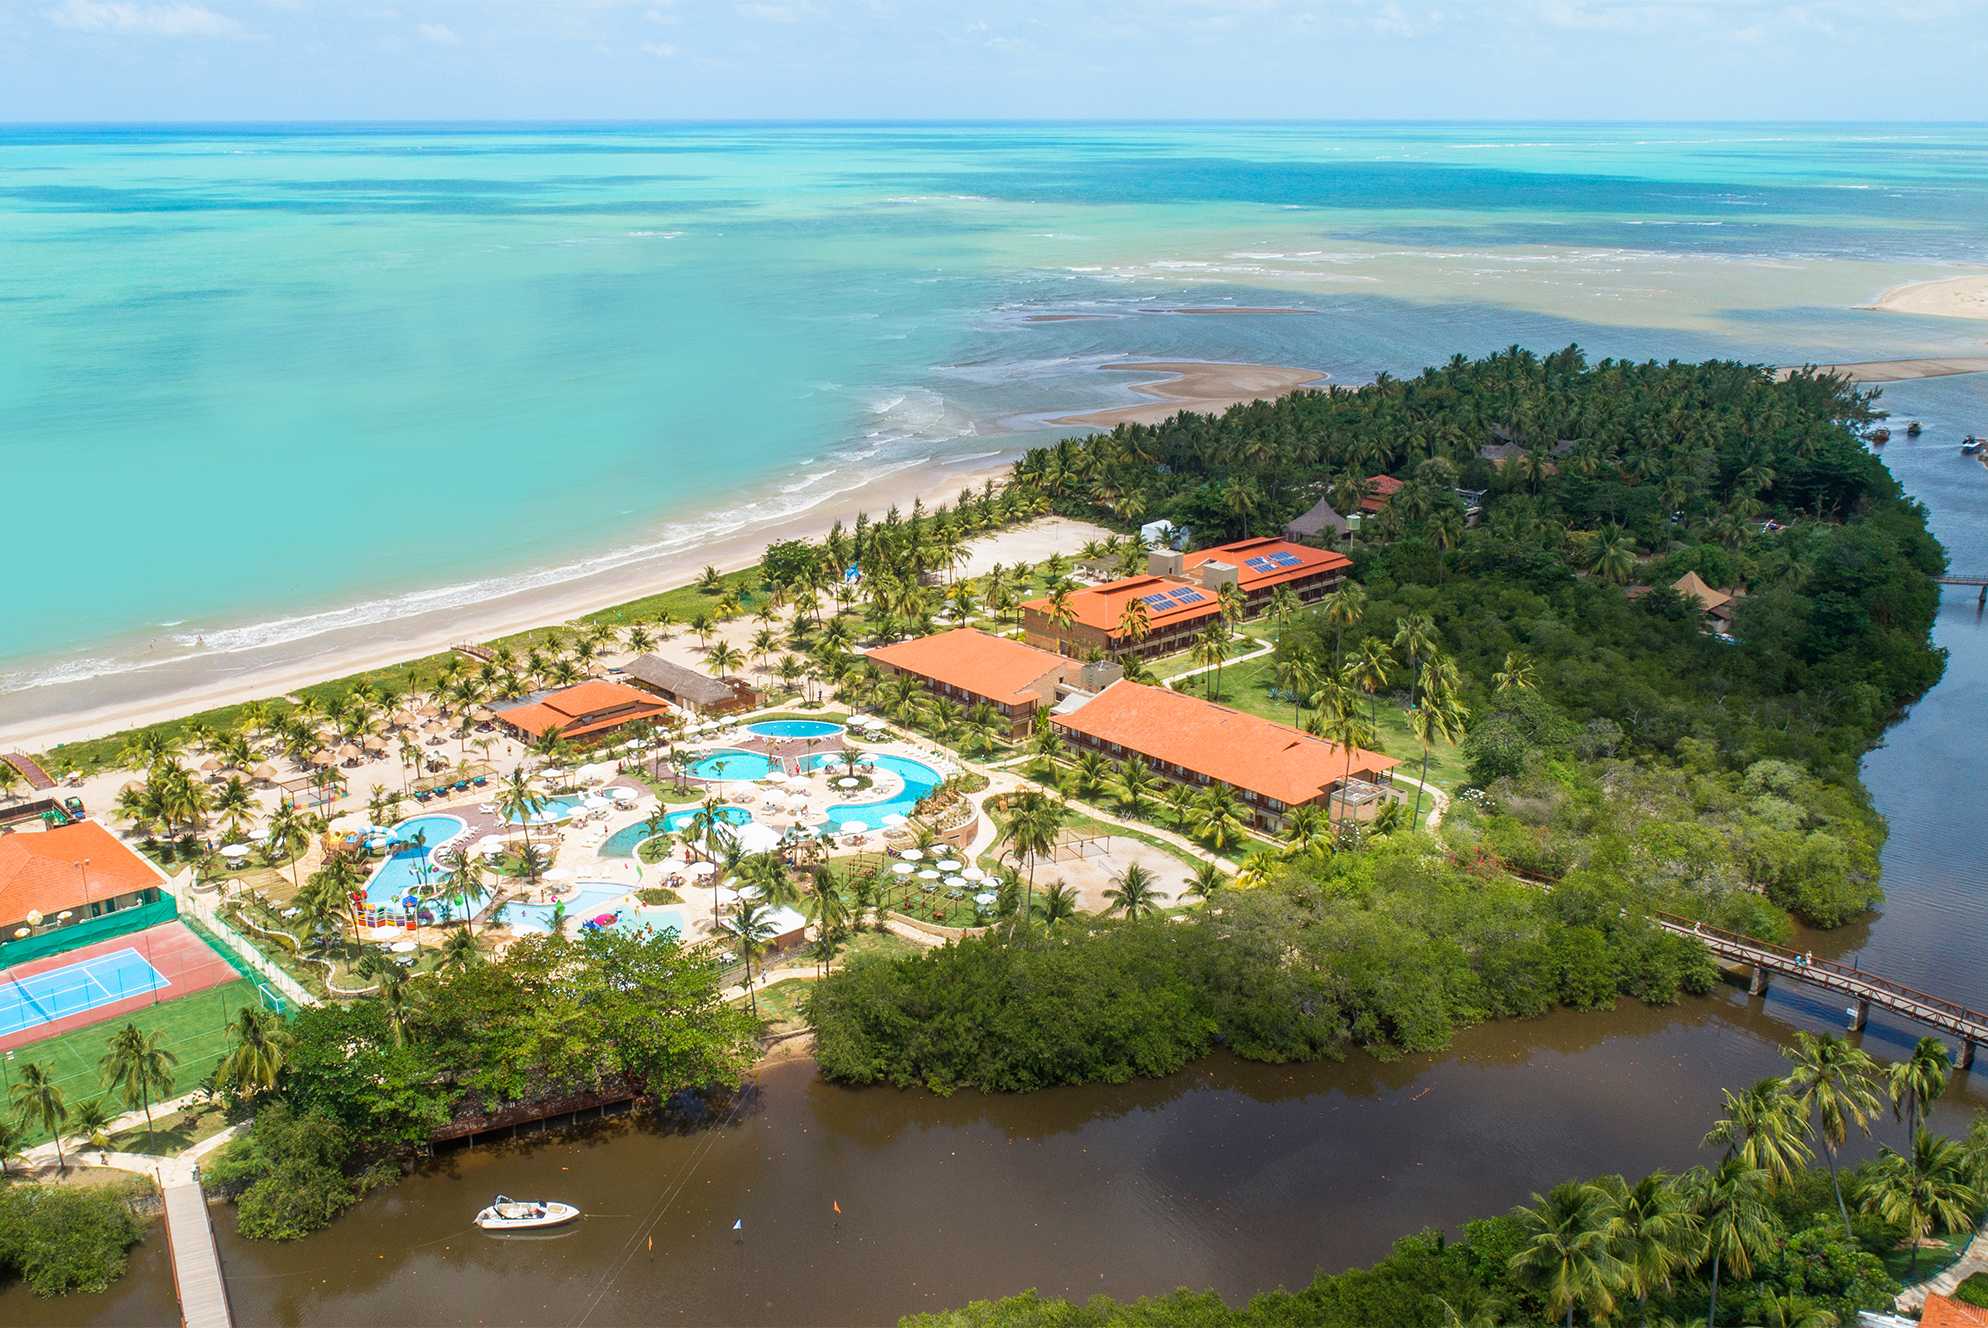 Vista aérea de um resort situado entre um rio e a praia de maragogi. O mar tem tons de azul e areia é branca. Há várias piscinas e edifícios no resort, que é cercado por vegetação tropical.